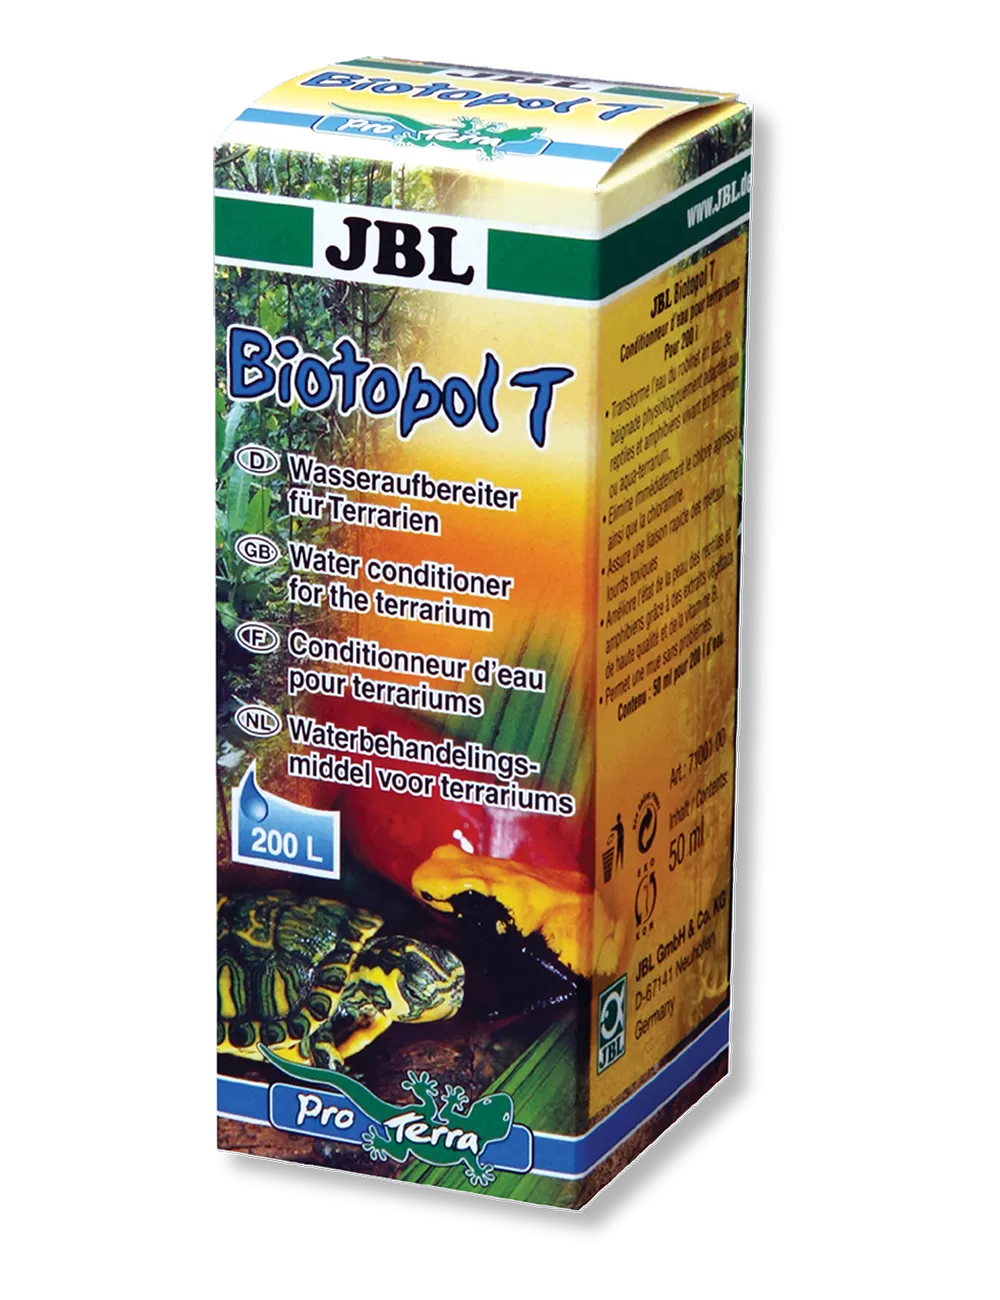 Conditionneur d'eau pour aquarium d'eaudouce - Biotopol - JBL